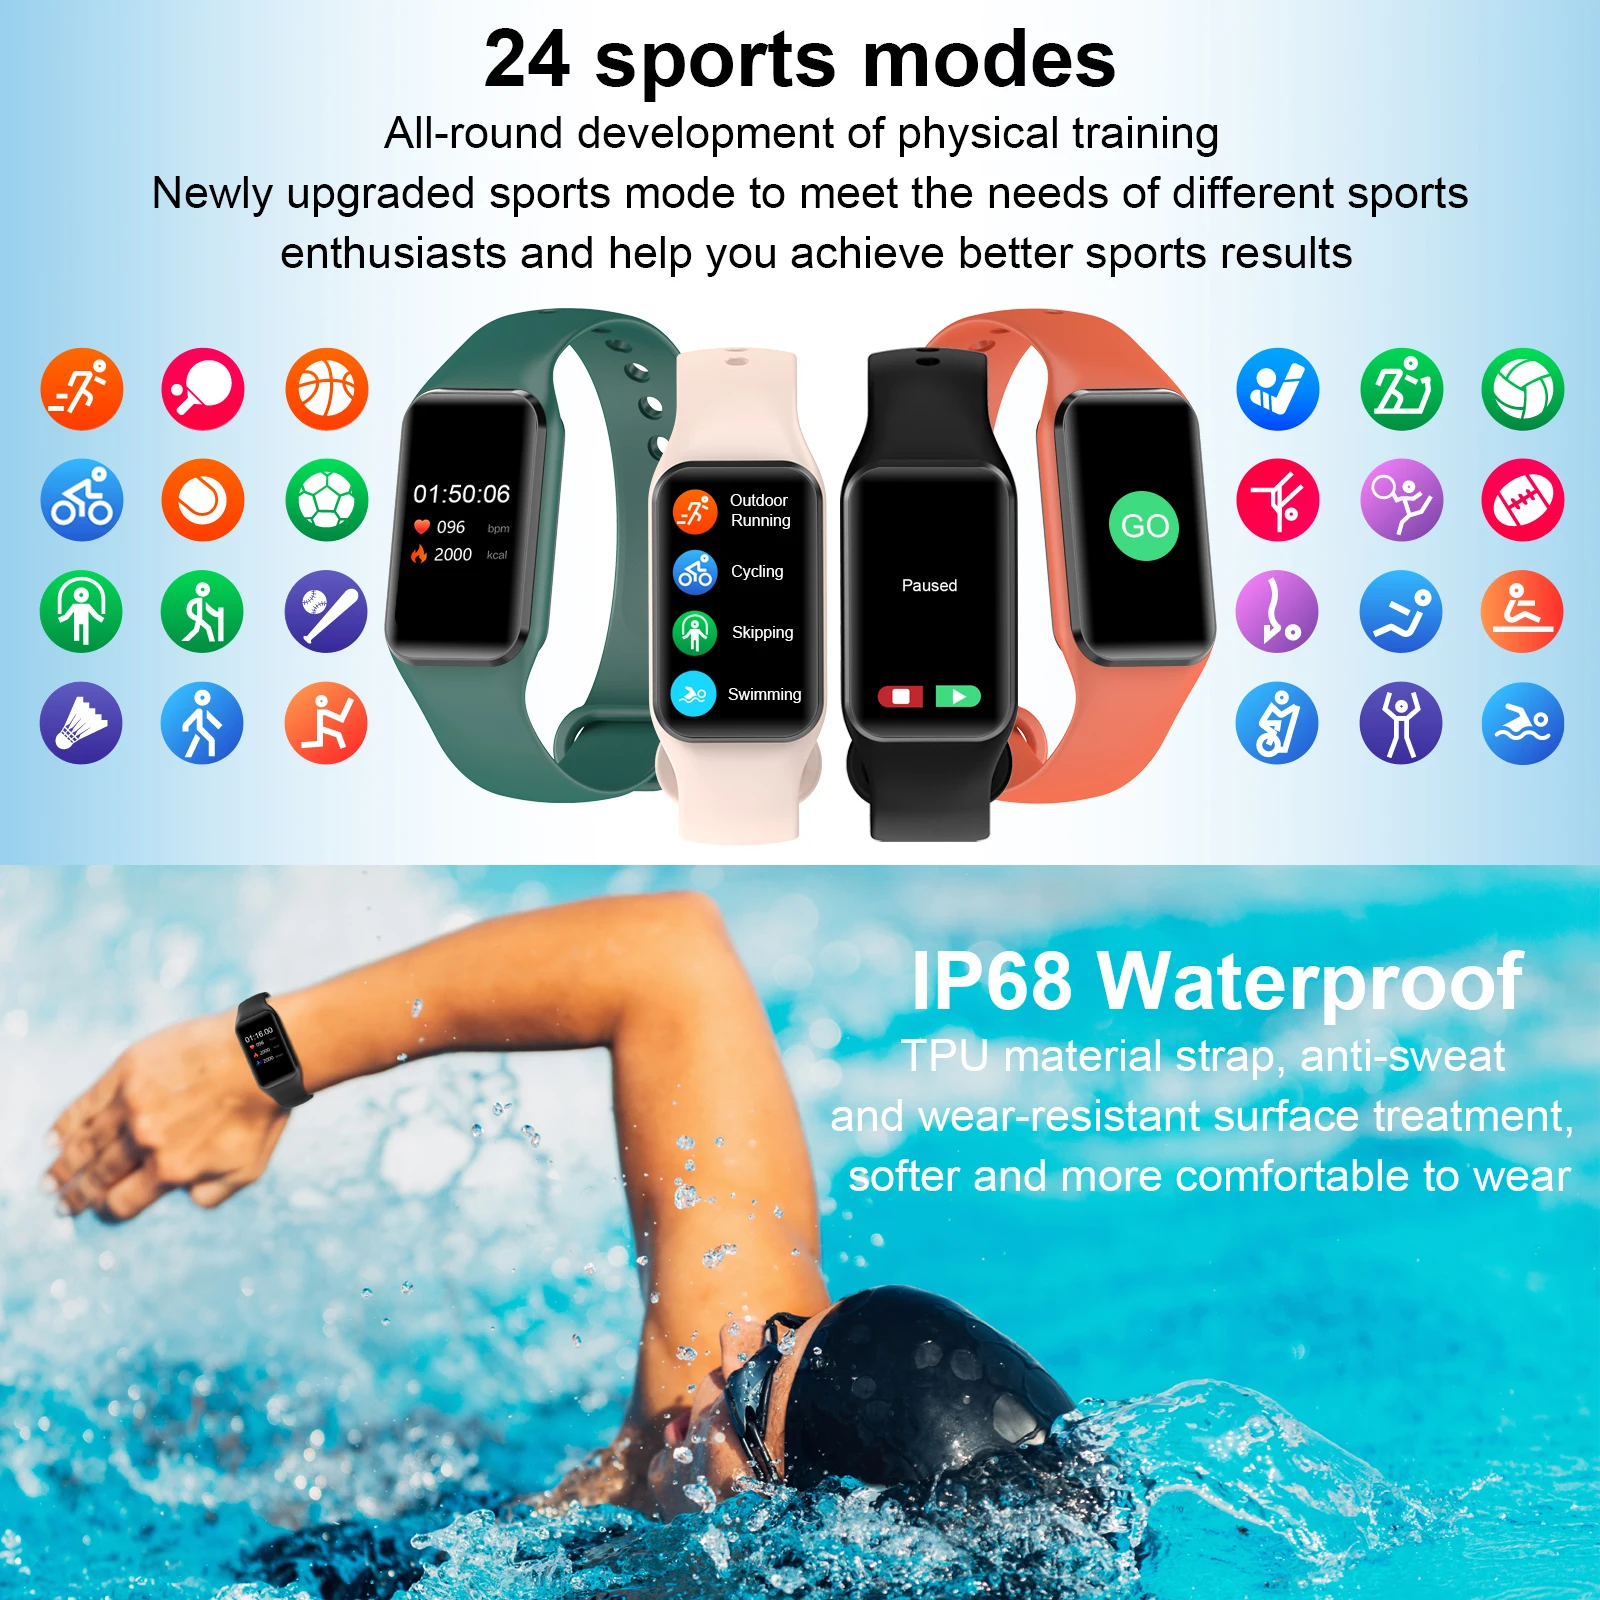 Comprar Blackview R3 - 12 modos deportivos - Con natación